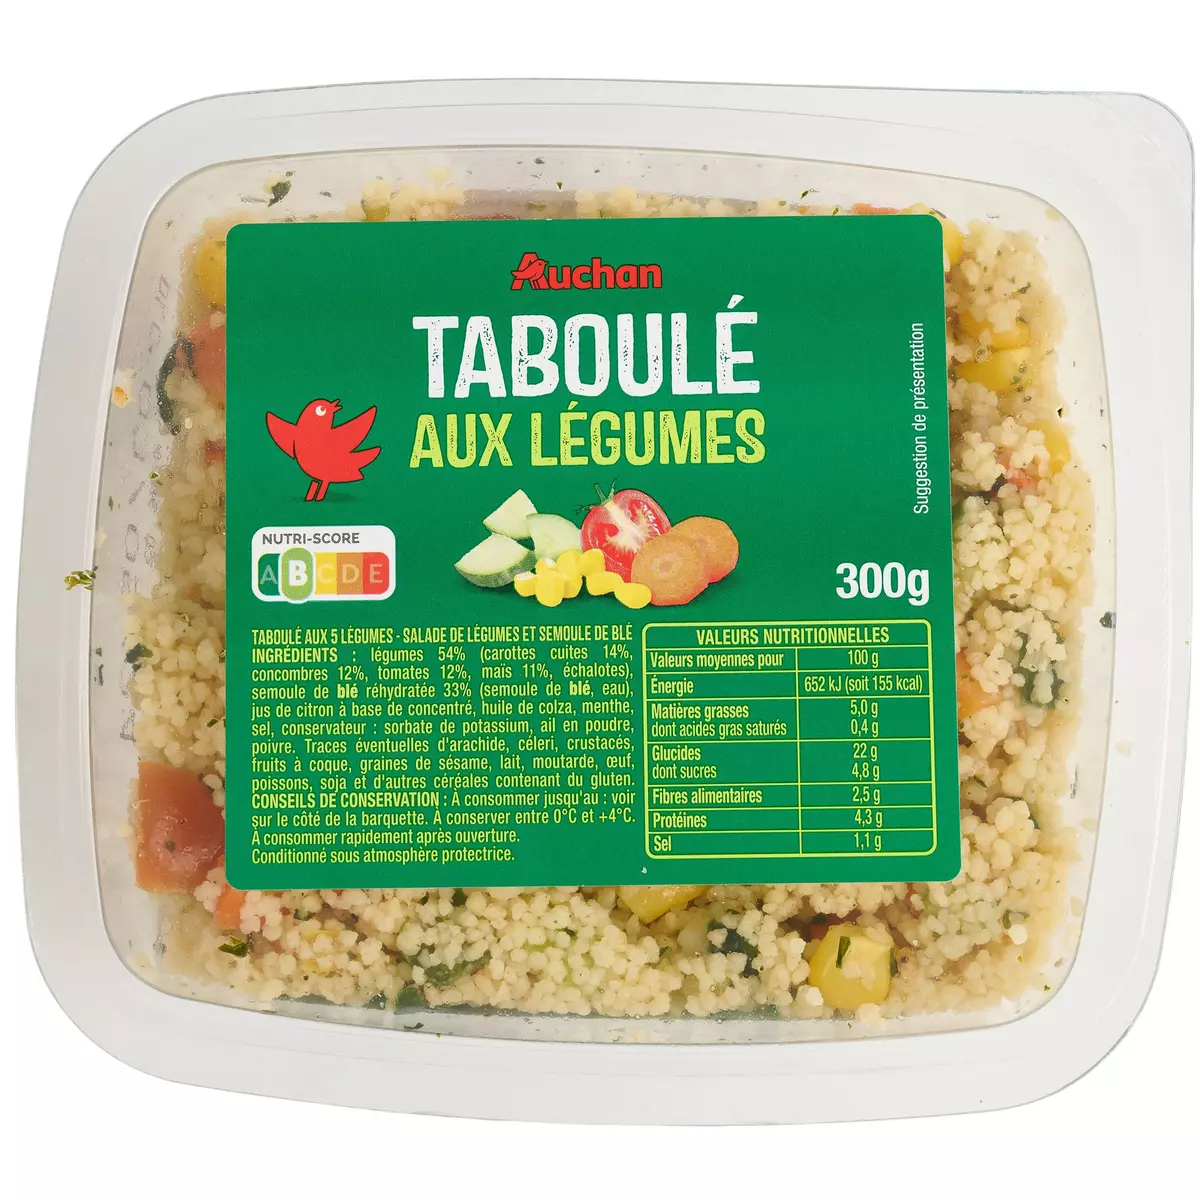 AUCHAN Taboulé aux légumes 300g